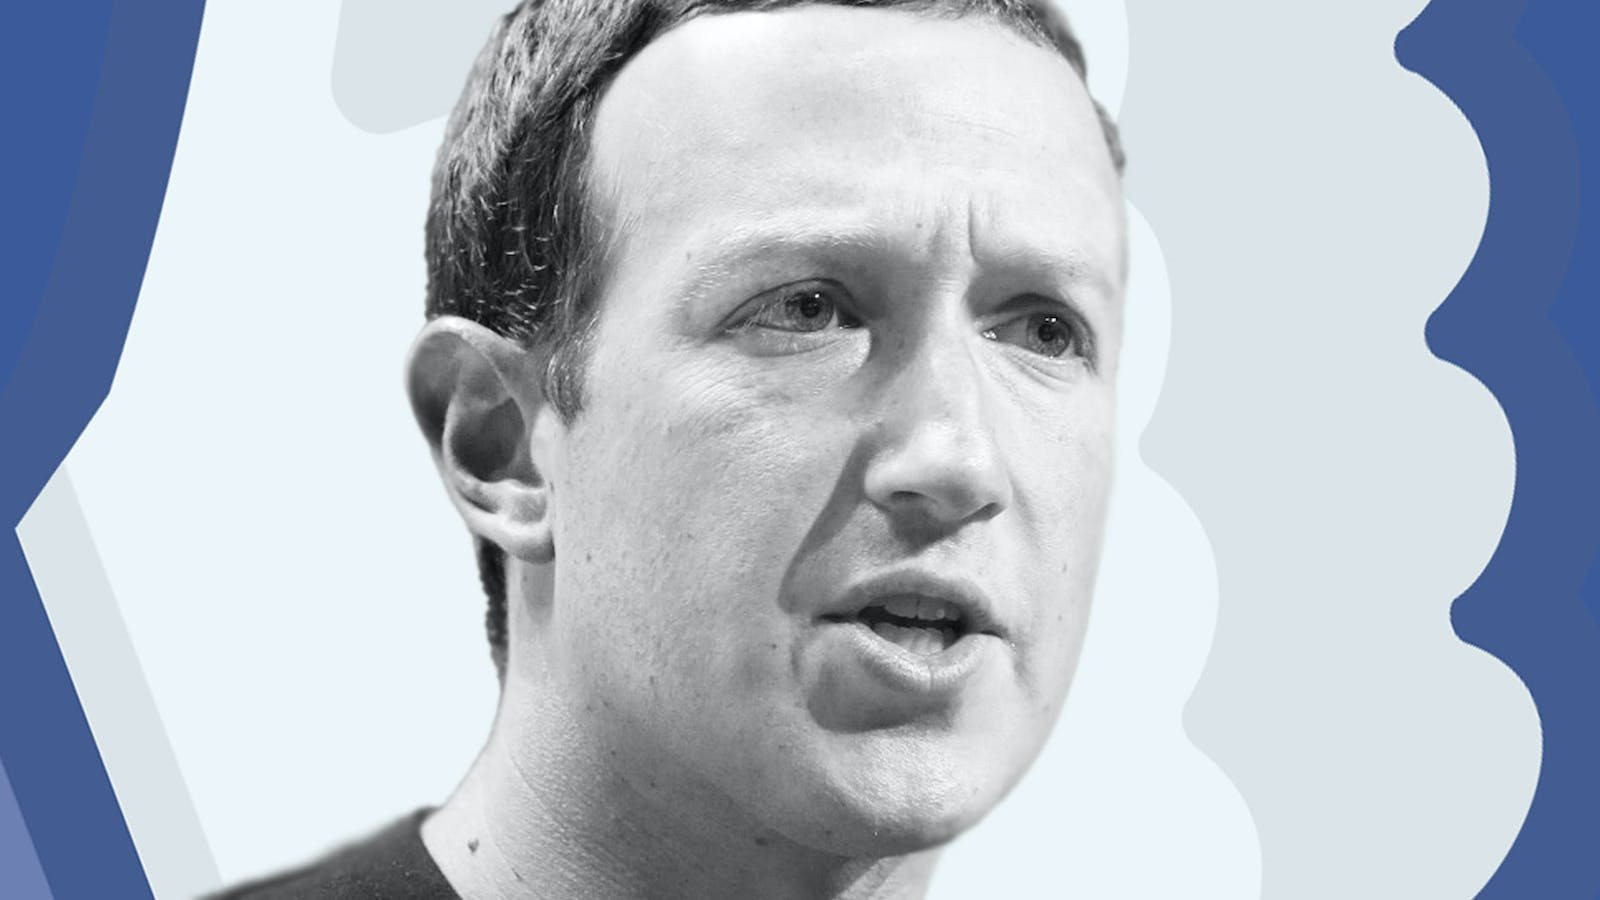 Quyền lực tuyệt đối của Mark Zuckerberg ở Meta: Nhà đầu tư chê CEO vô tình vì tự quyết định mọi thứ, họp cổ đông chỉ mang tính hình thức - Ảnh 1.